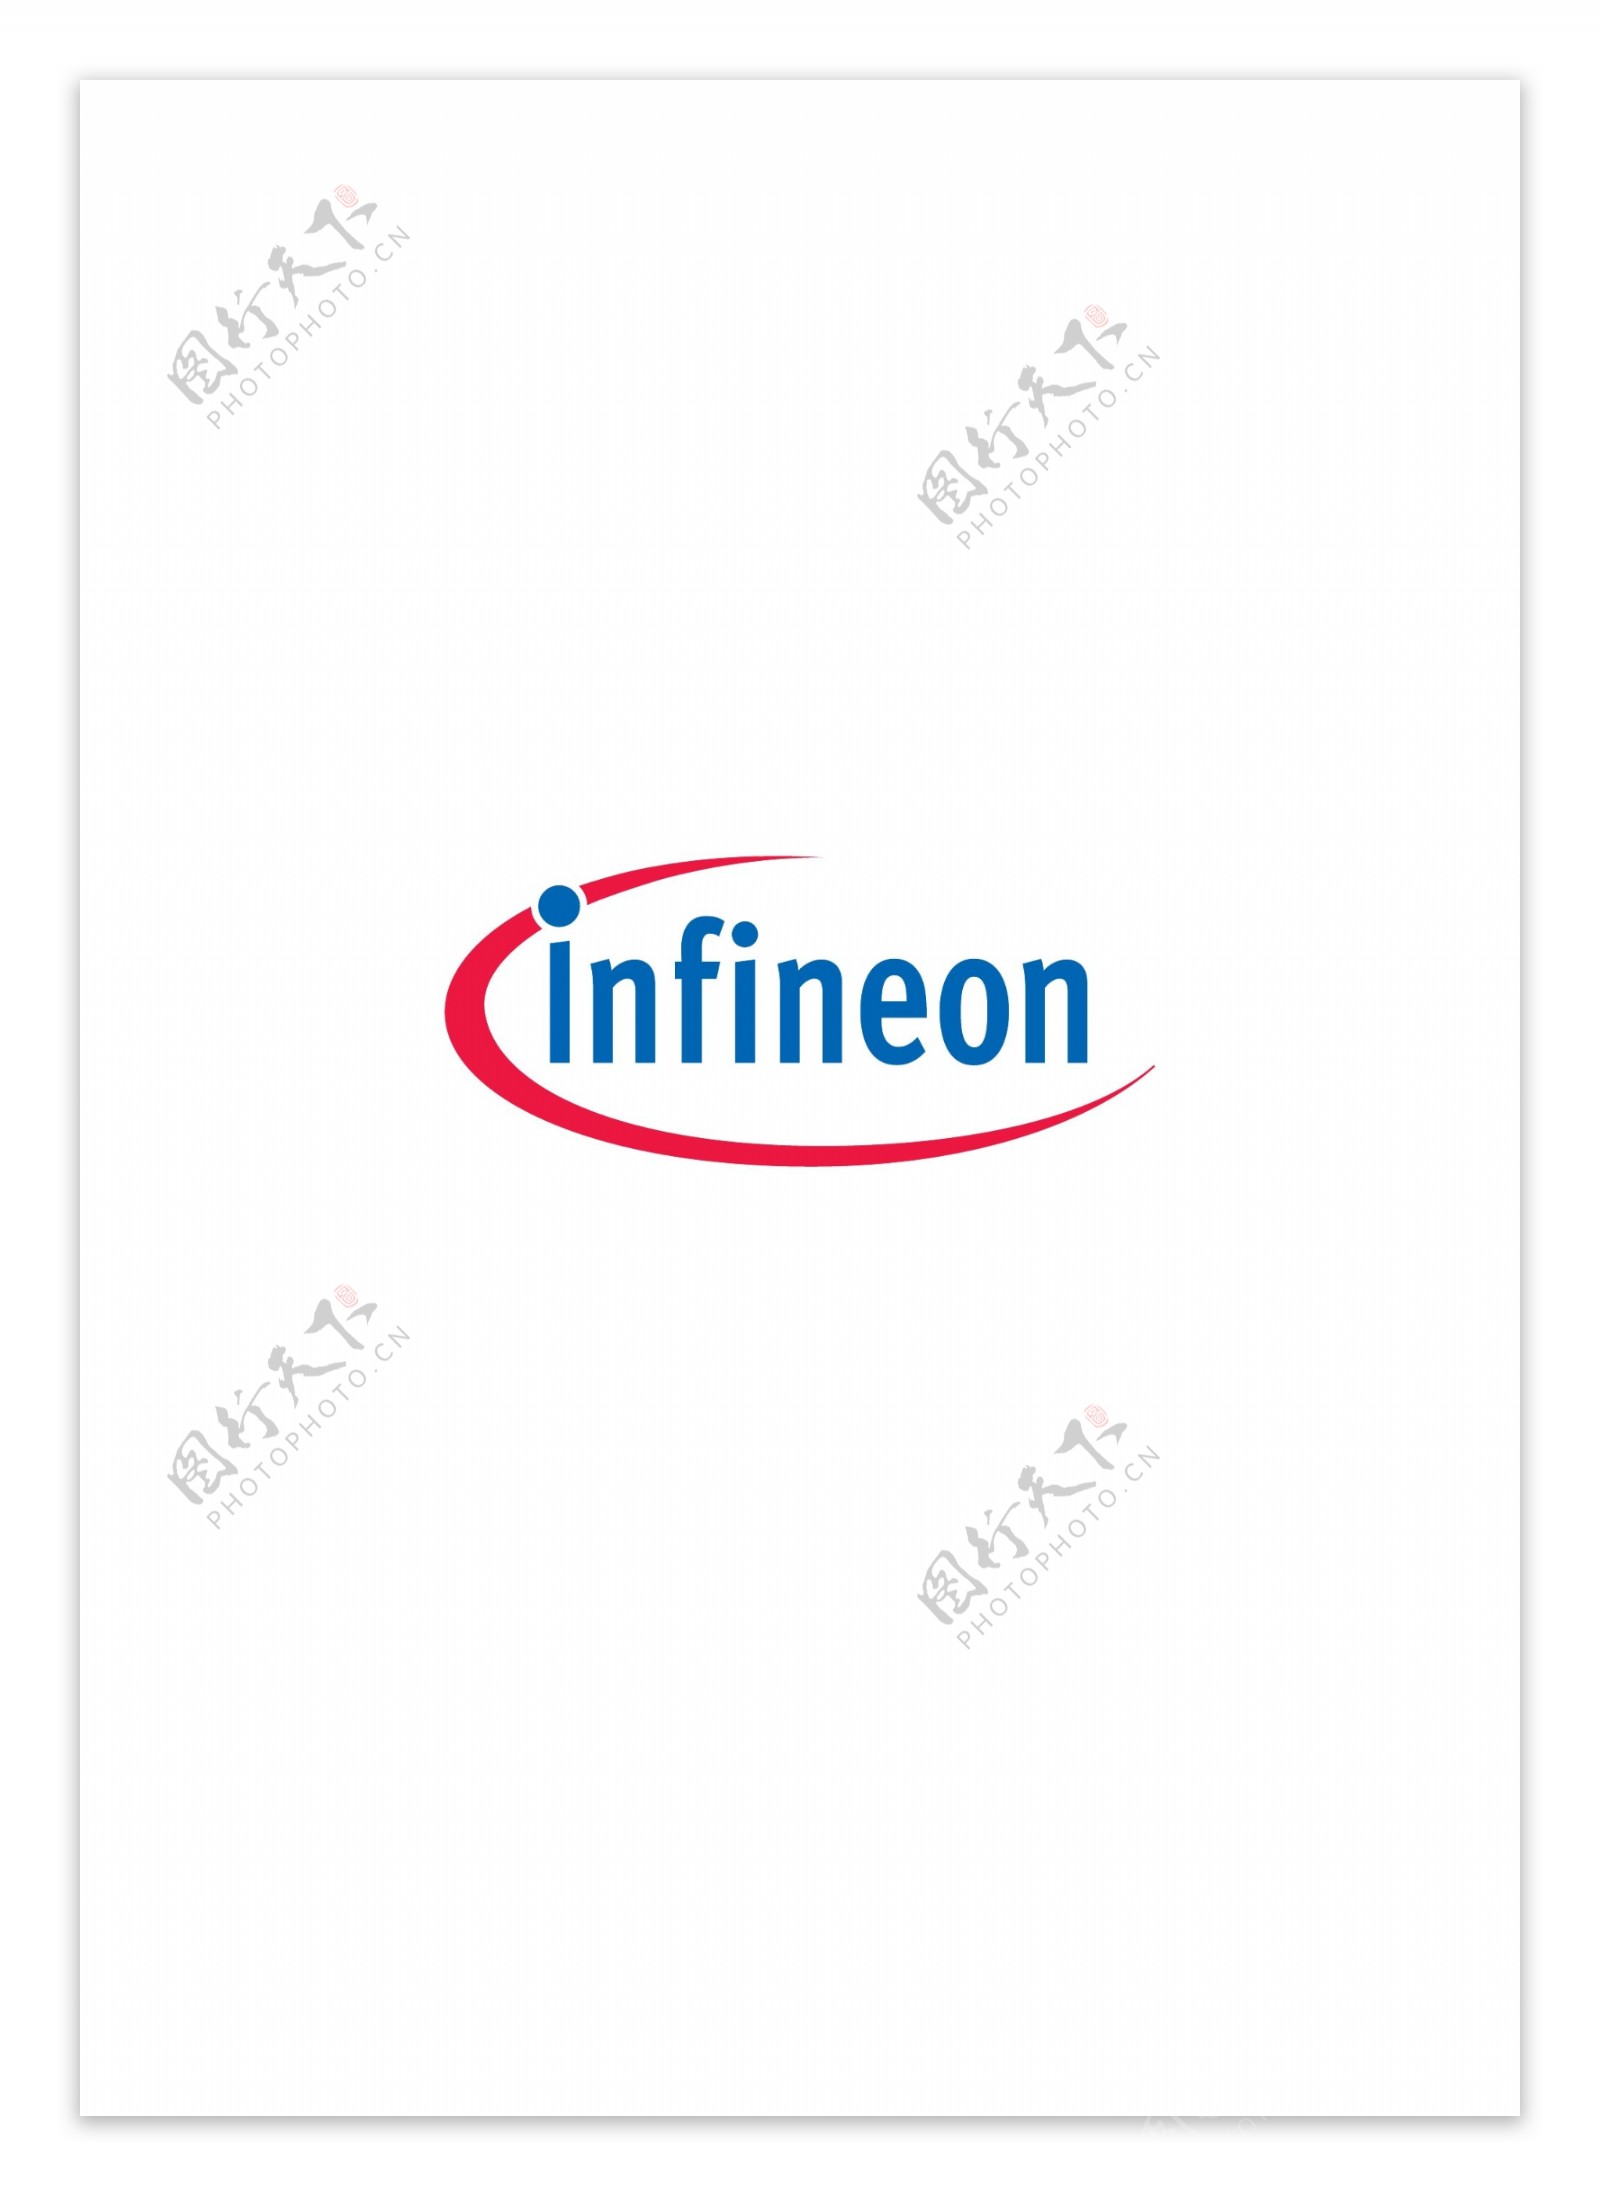 Infineonlogo设计欣赏Infineon重工标志下载标志设计欣赏